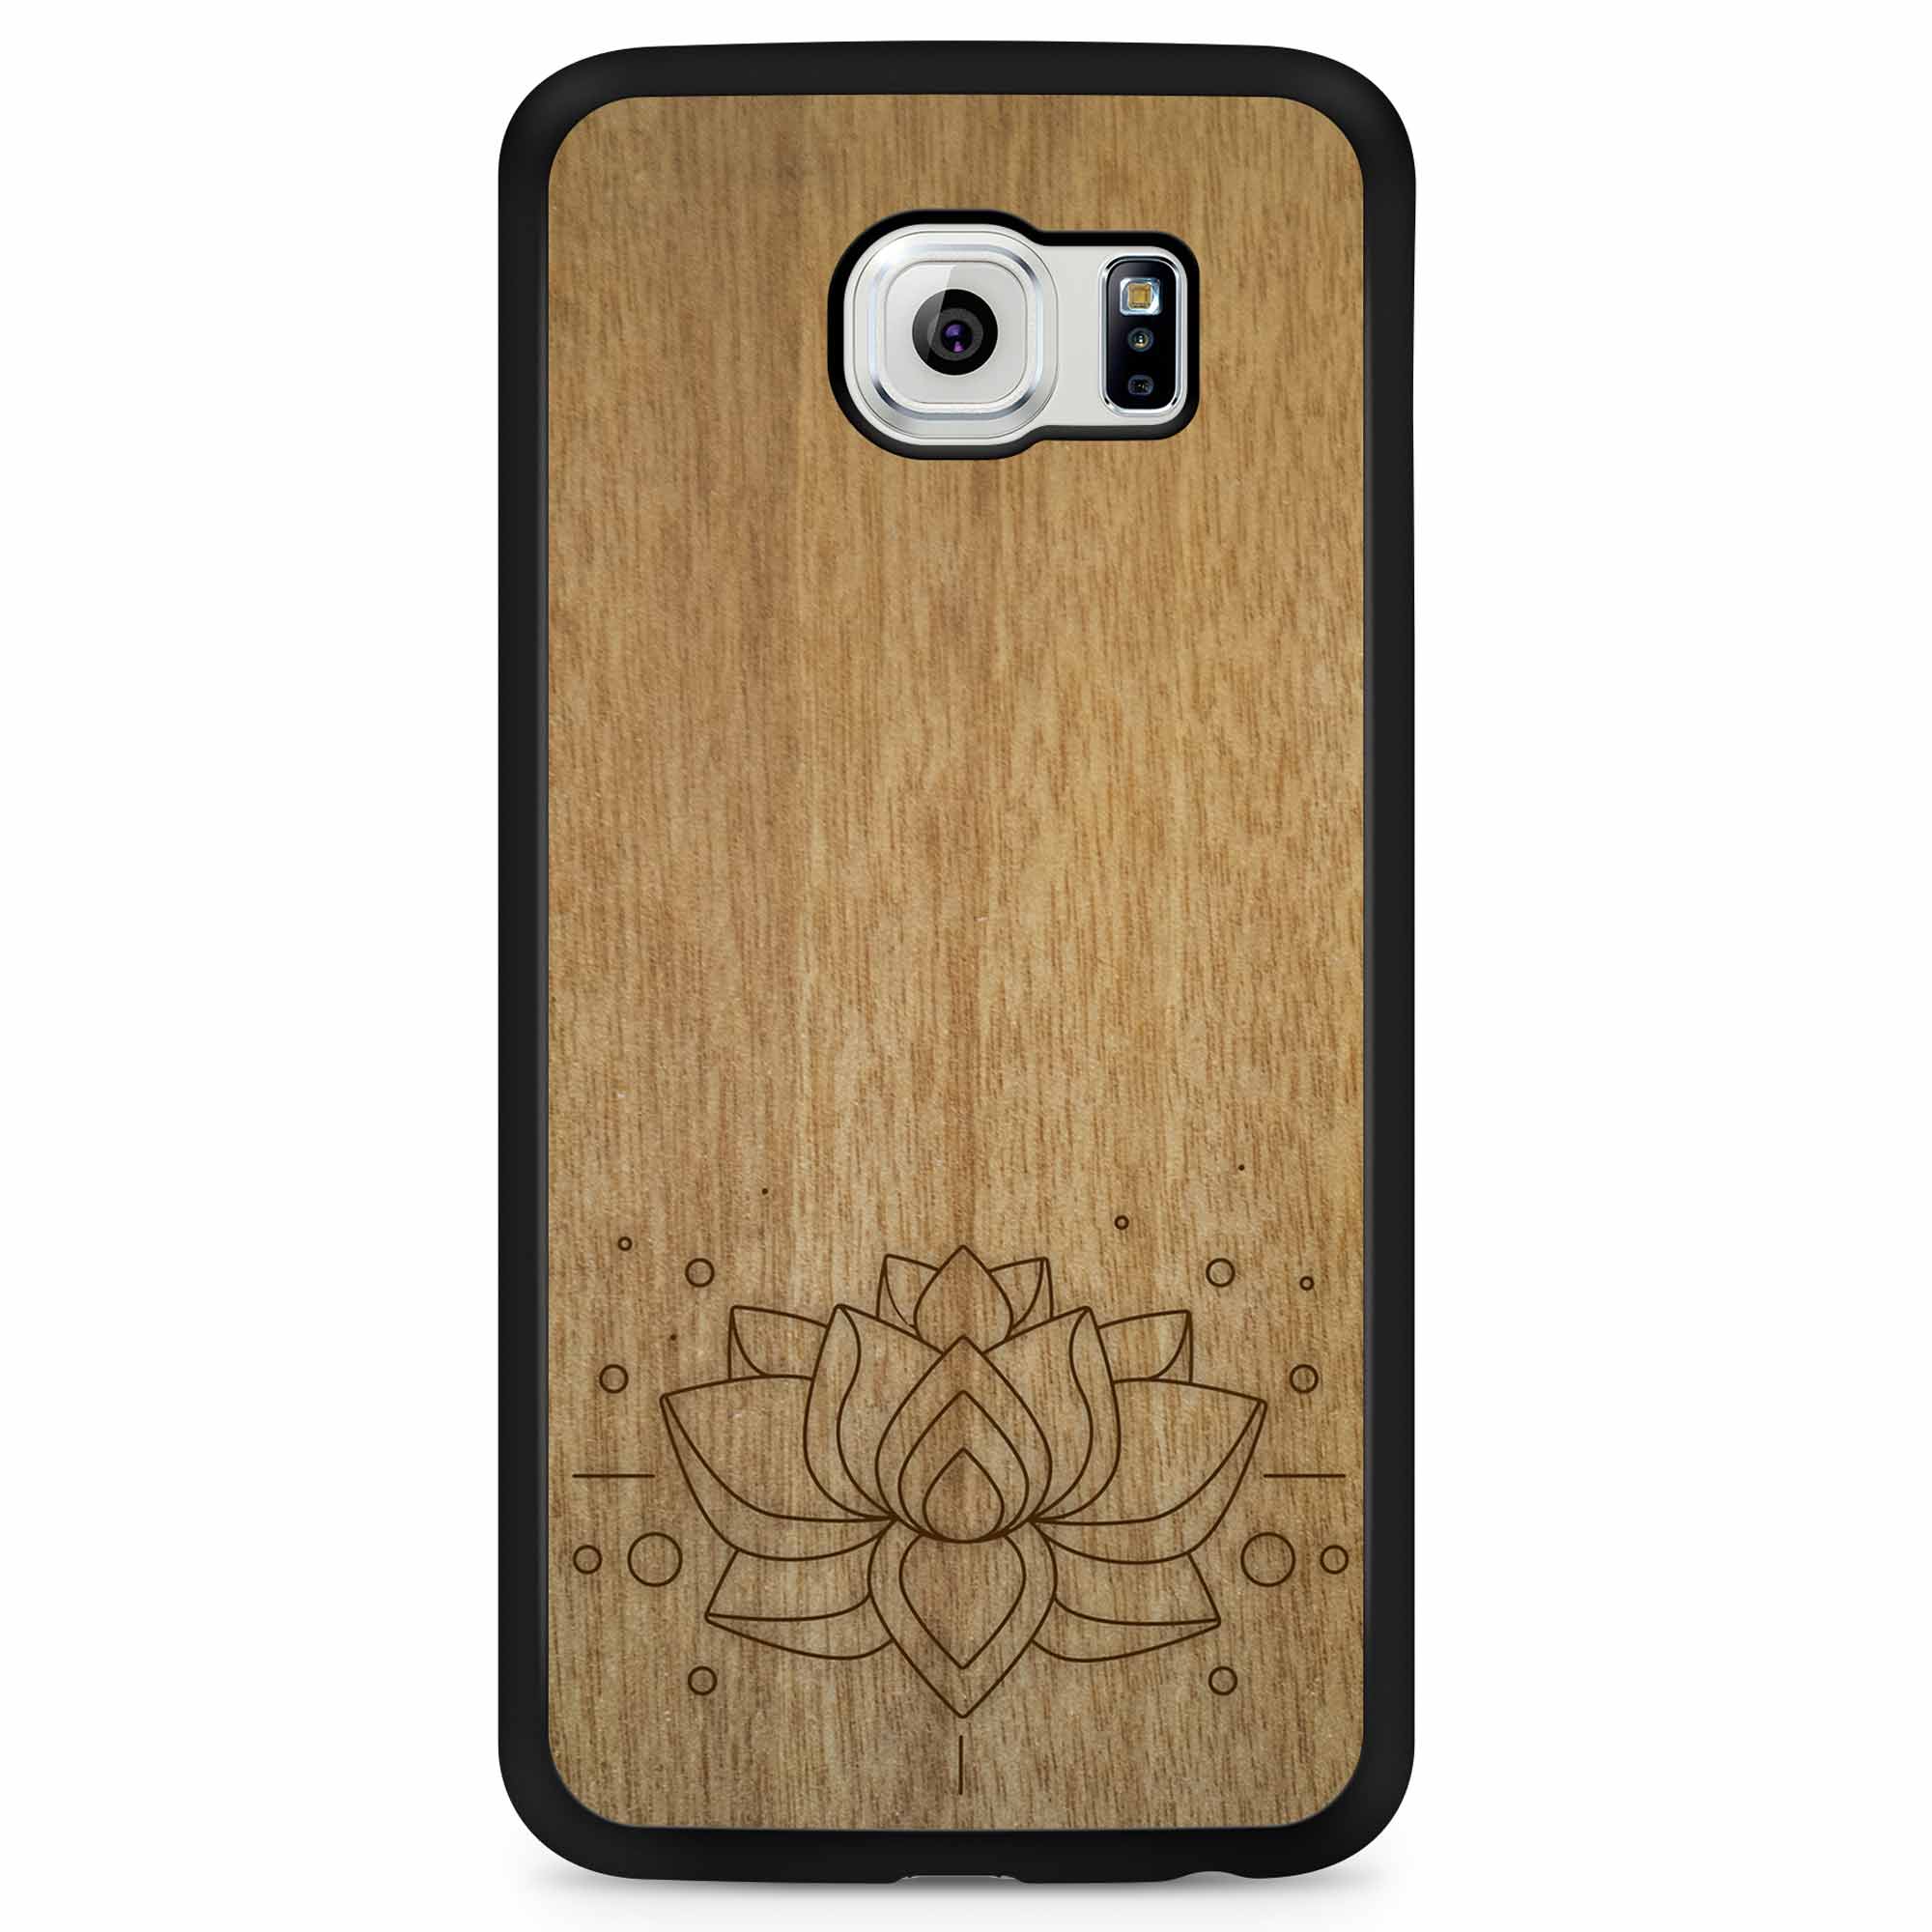 Деревянный чехол для телефона Samsung S6 с гравировкой Lotus